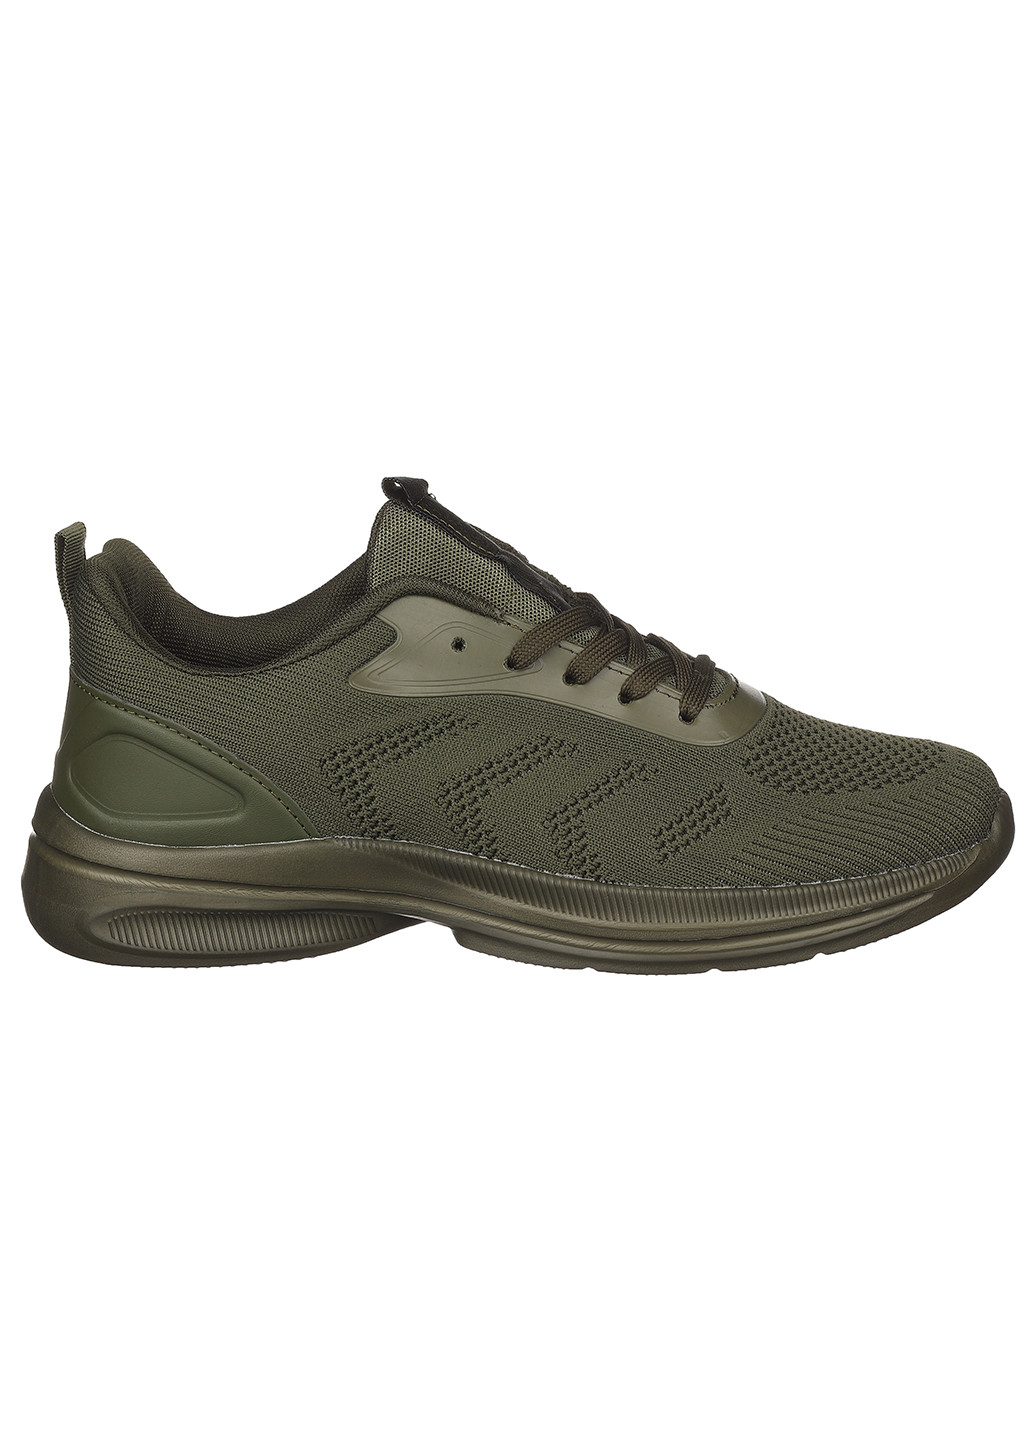 Зеленые демисезонные мужские кроссовки а5043-2 Bayota